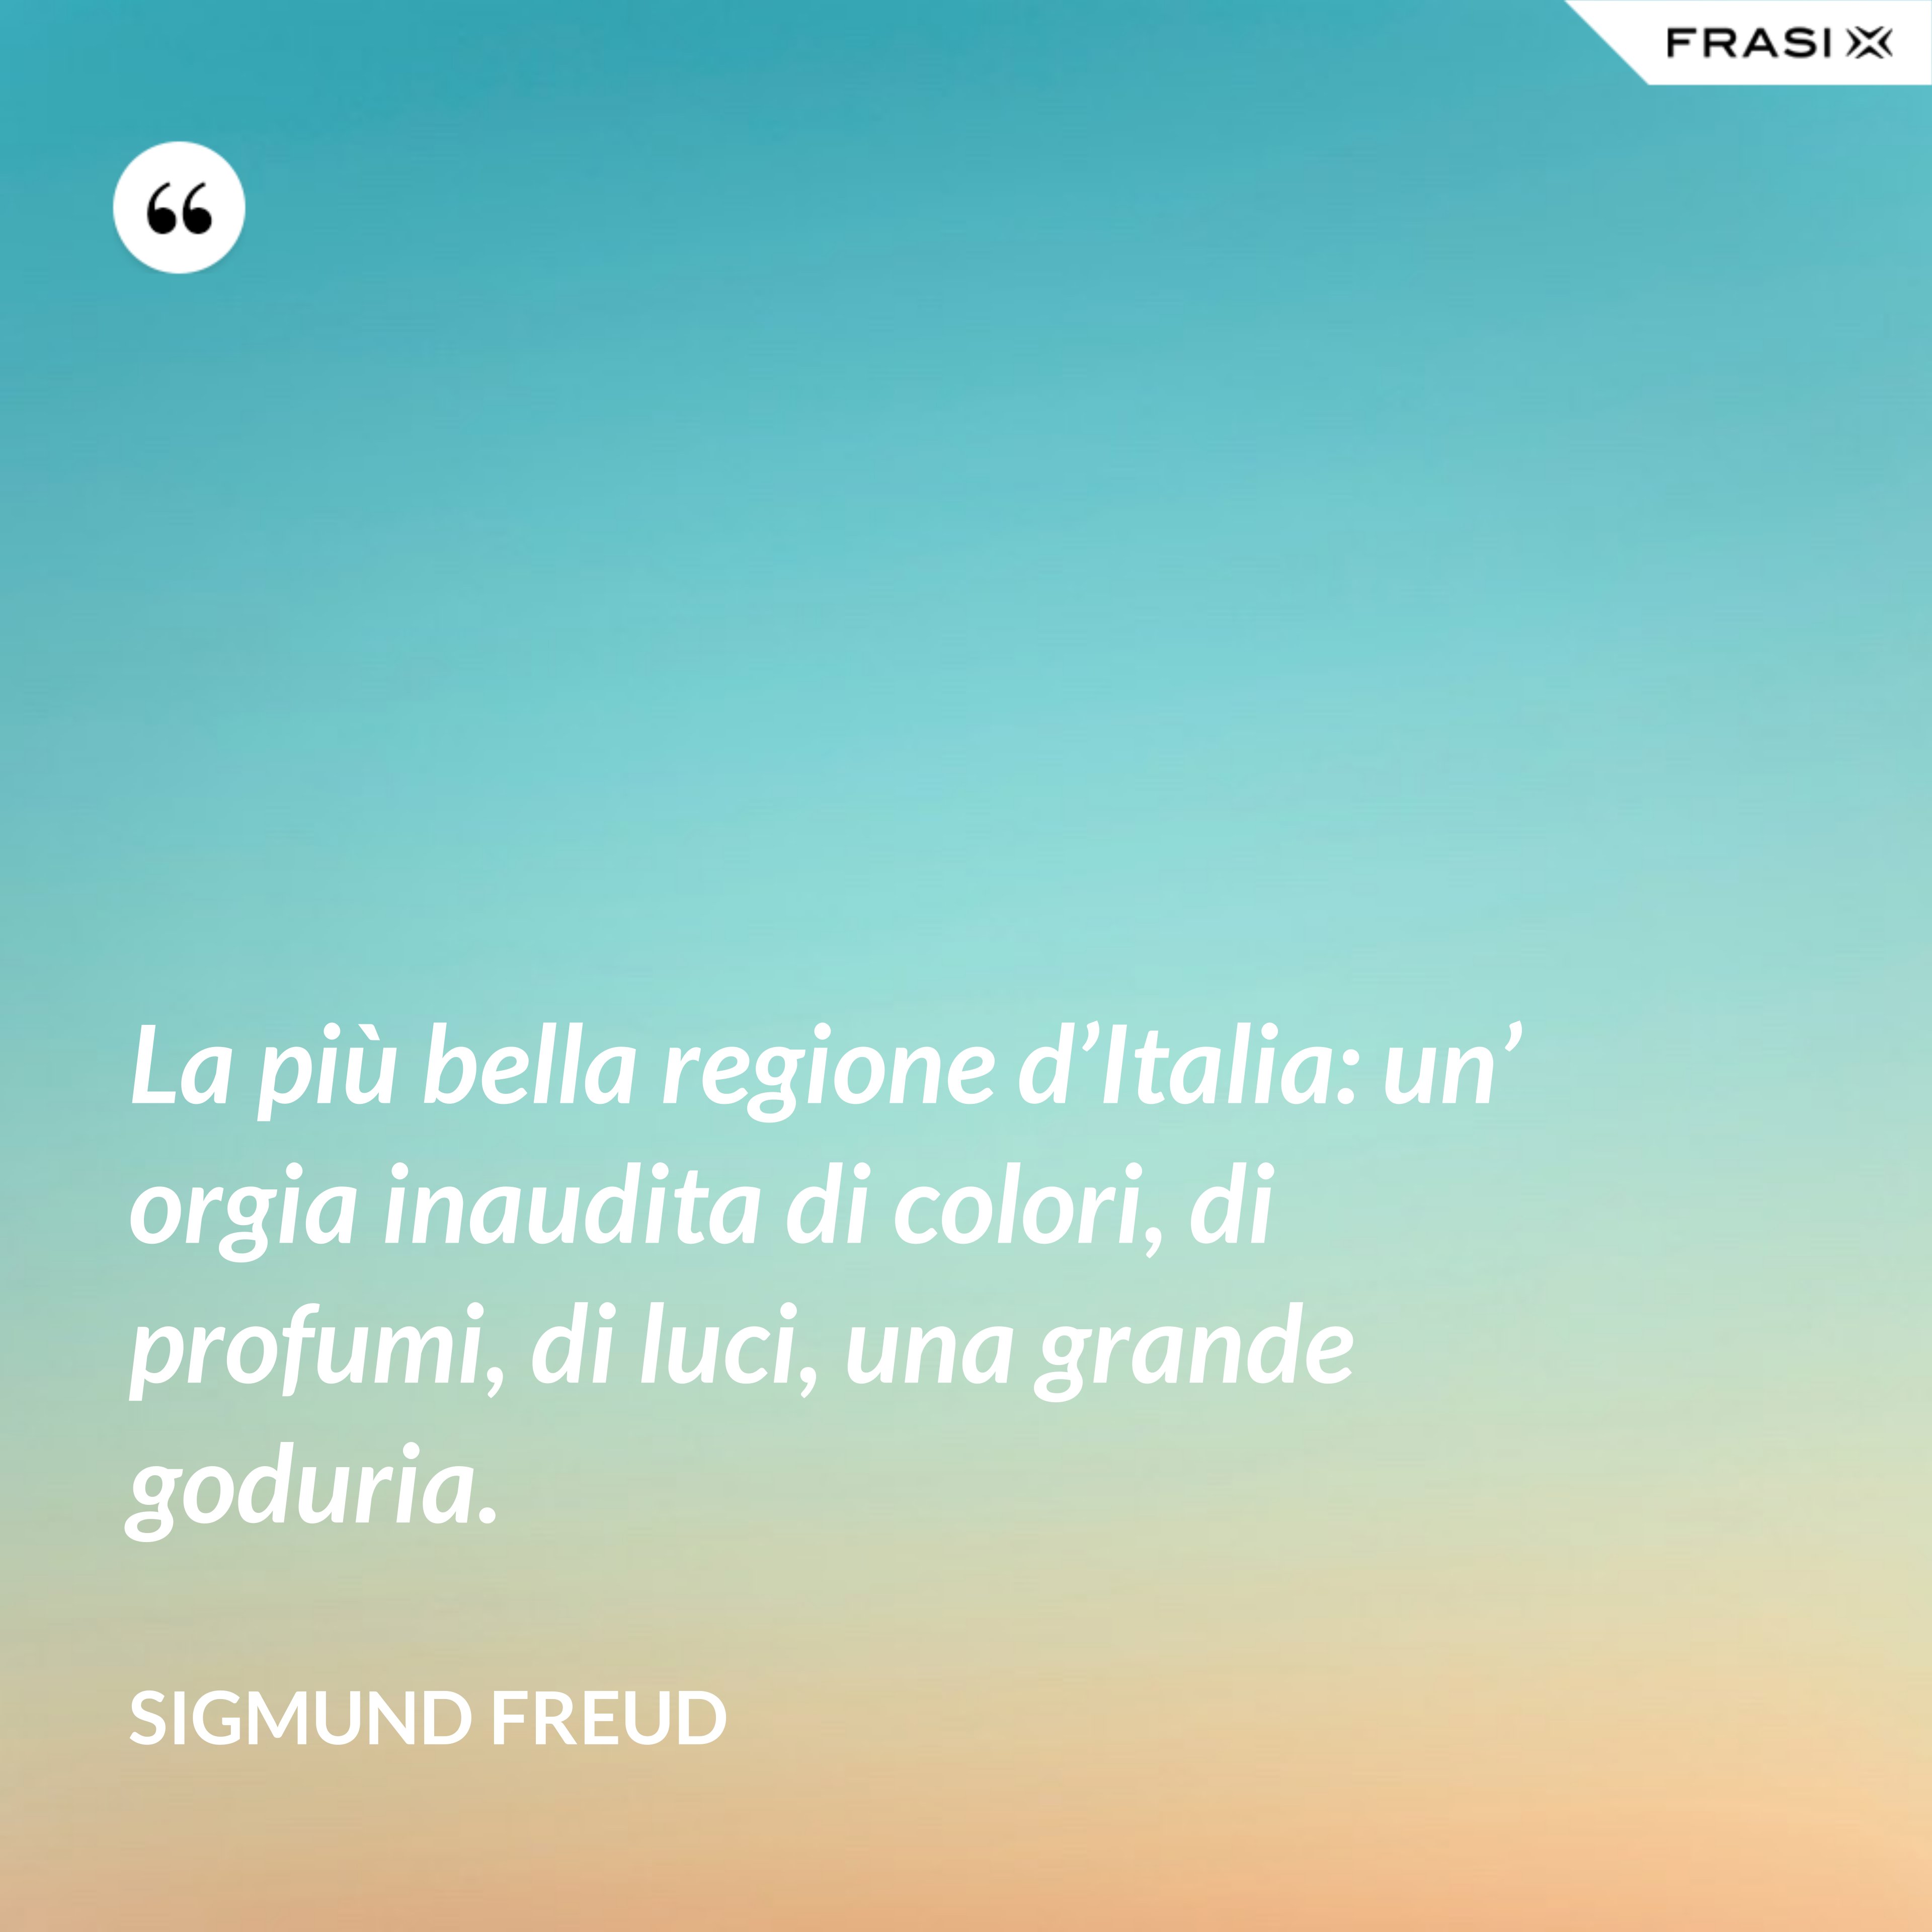 La più bella regione d’Italia: un’ orgia inaudita di colori, di profumi, di luci, una grande goduria. - Sigmund Freud